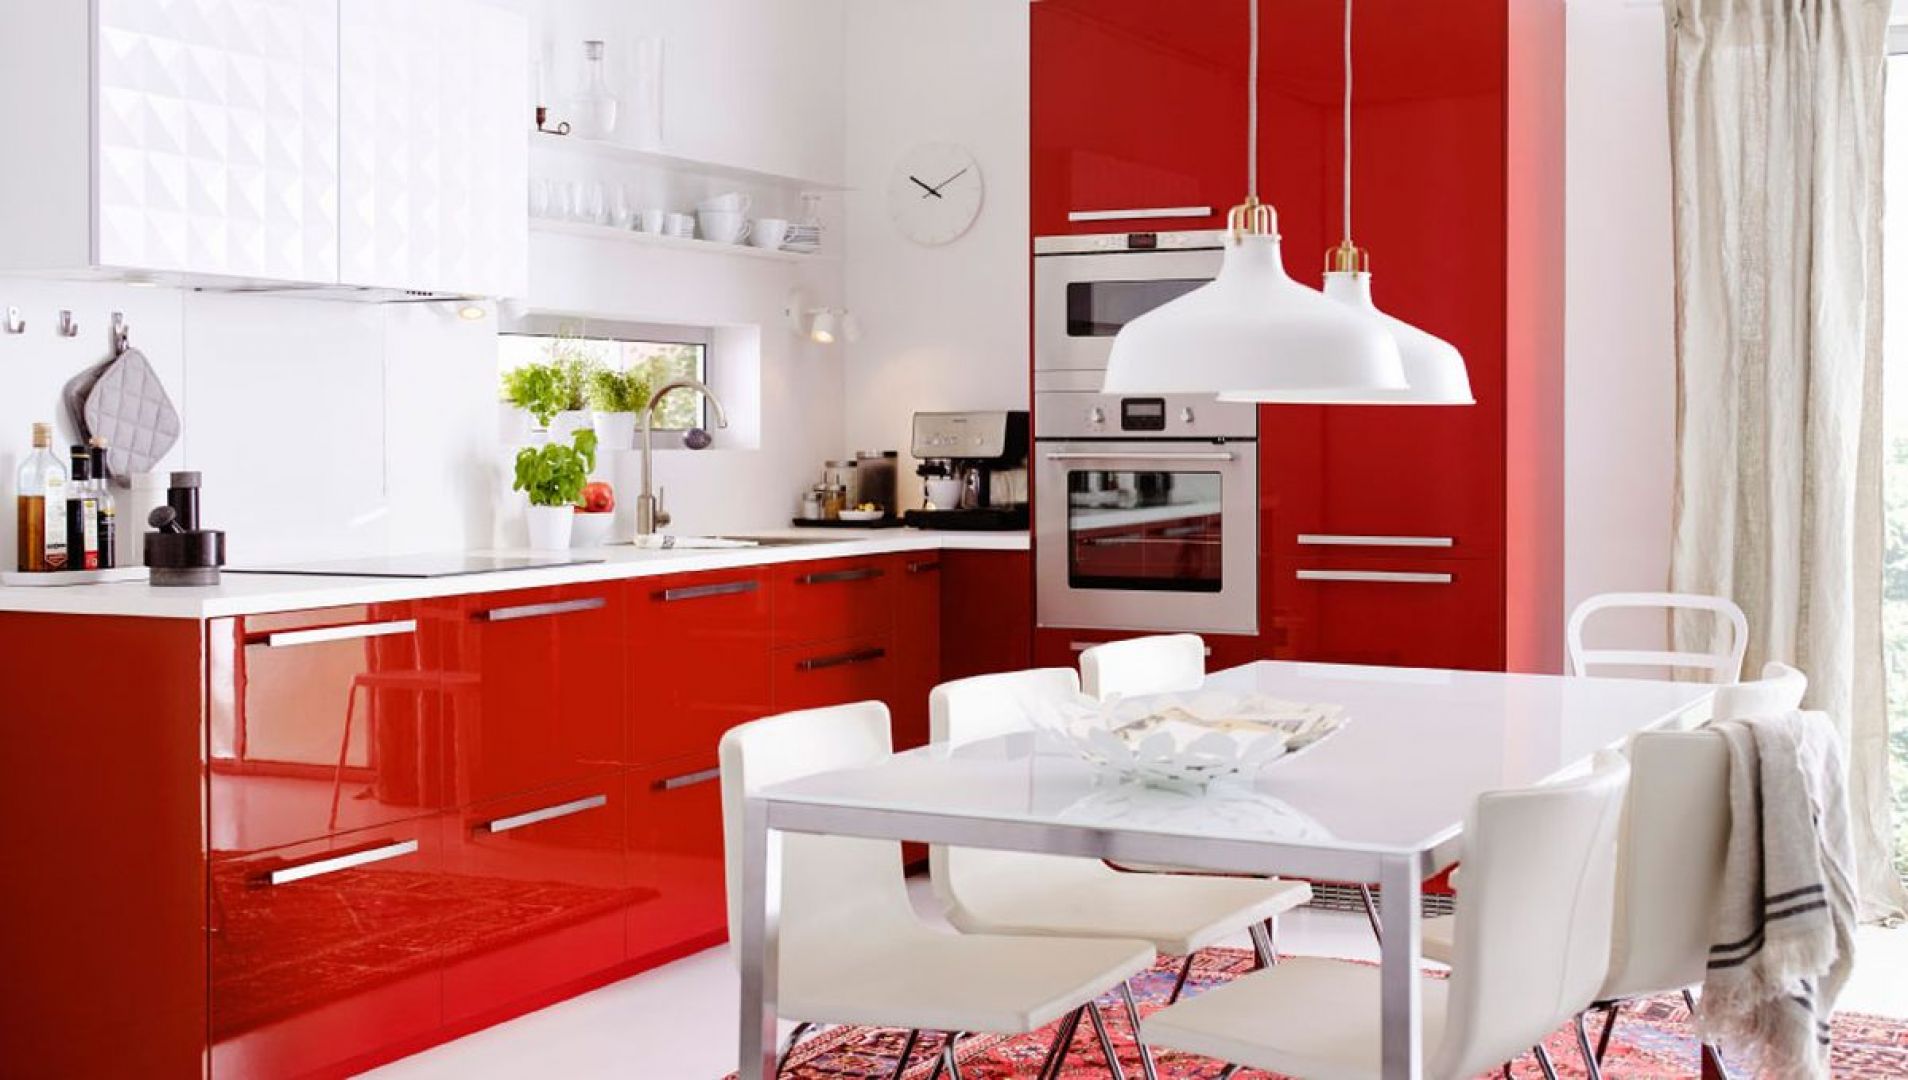 Kuchnia Metod to modne połączenie bieli i jaskrawej czerwieni. Wgląda nie tylko stylowo, ale posiada także mnóstwo pomysłowych funkcji, które zdecydowanie ułatwią codzienne życie. Fot. IKEA